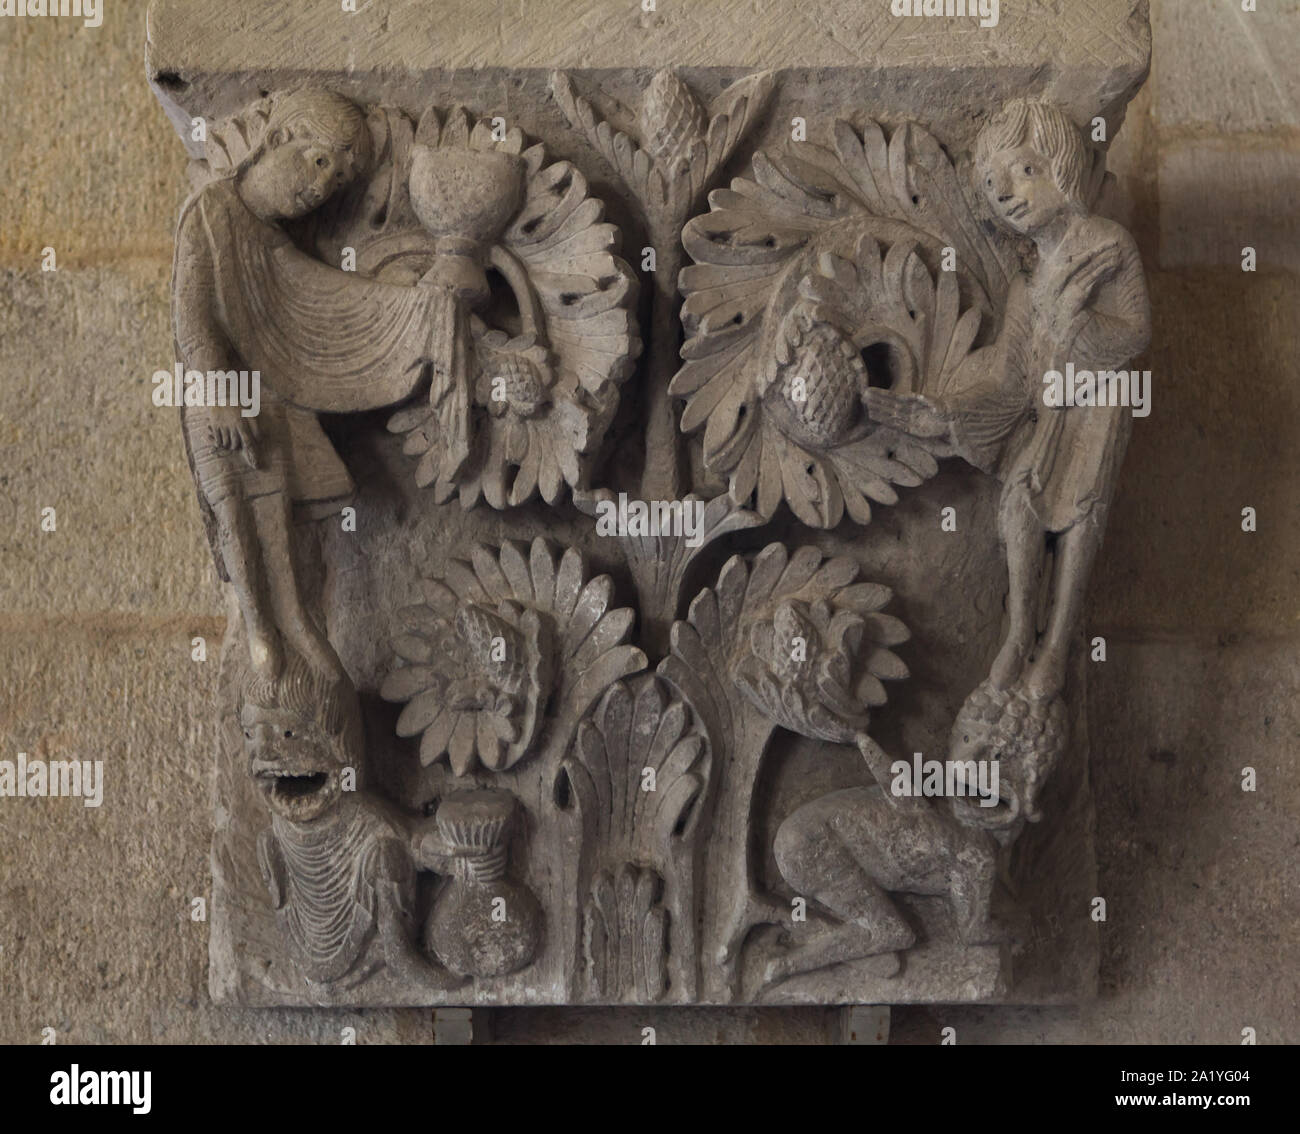 Kampf zwischen Tugenden und Laster dargestellt in der Romanischen Kapital aus dem 12. Jahrhundert datiert aus dem Autun Dom (Kathedrale Saint-Lazare d'Autun), nun im Kapitel Bibliothek der Kathedrale von Autun Autun, Burgund, Frankreich. Nächstenliebe ist, dargestellt mit einem Kelch gemahlen der Dämon der Habgier, der zwei Beutel mit Geld, während die Hoffnung der Dämon der Verzweiflung tötet mit einem Schub von ihr Schwert. Die Hauptstadt wurde wahrscheinlich von französischen Romanische Bildhauer Gislebertus geschnitzt. Stockfoto